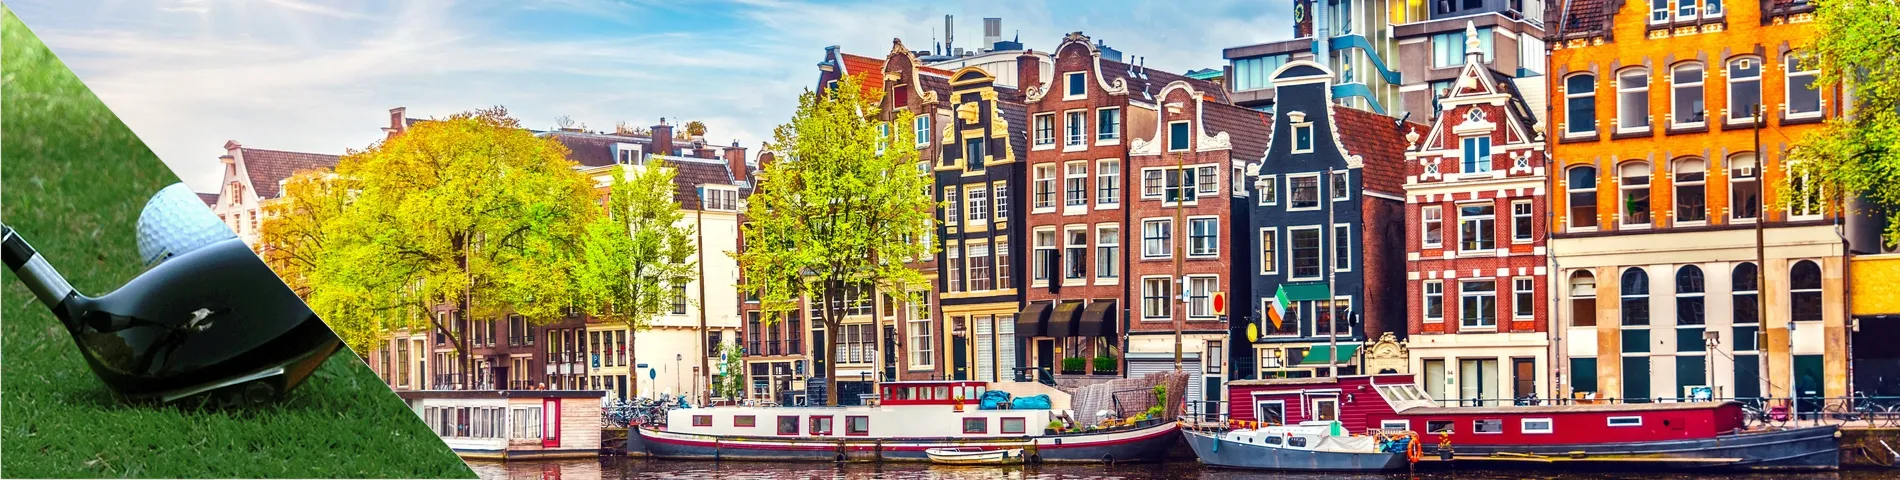 أمستردام - تعلم اللغة والجولف